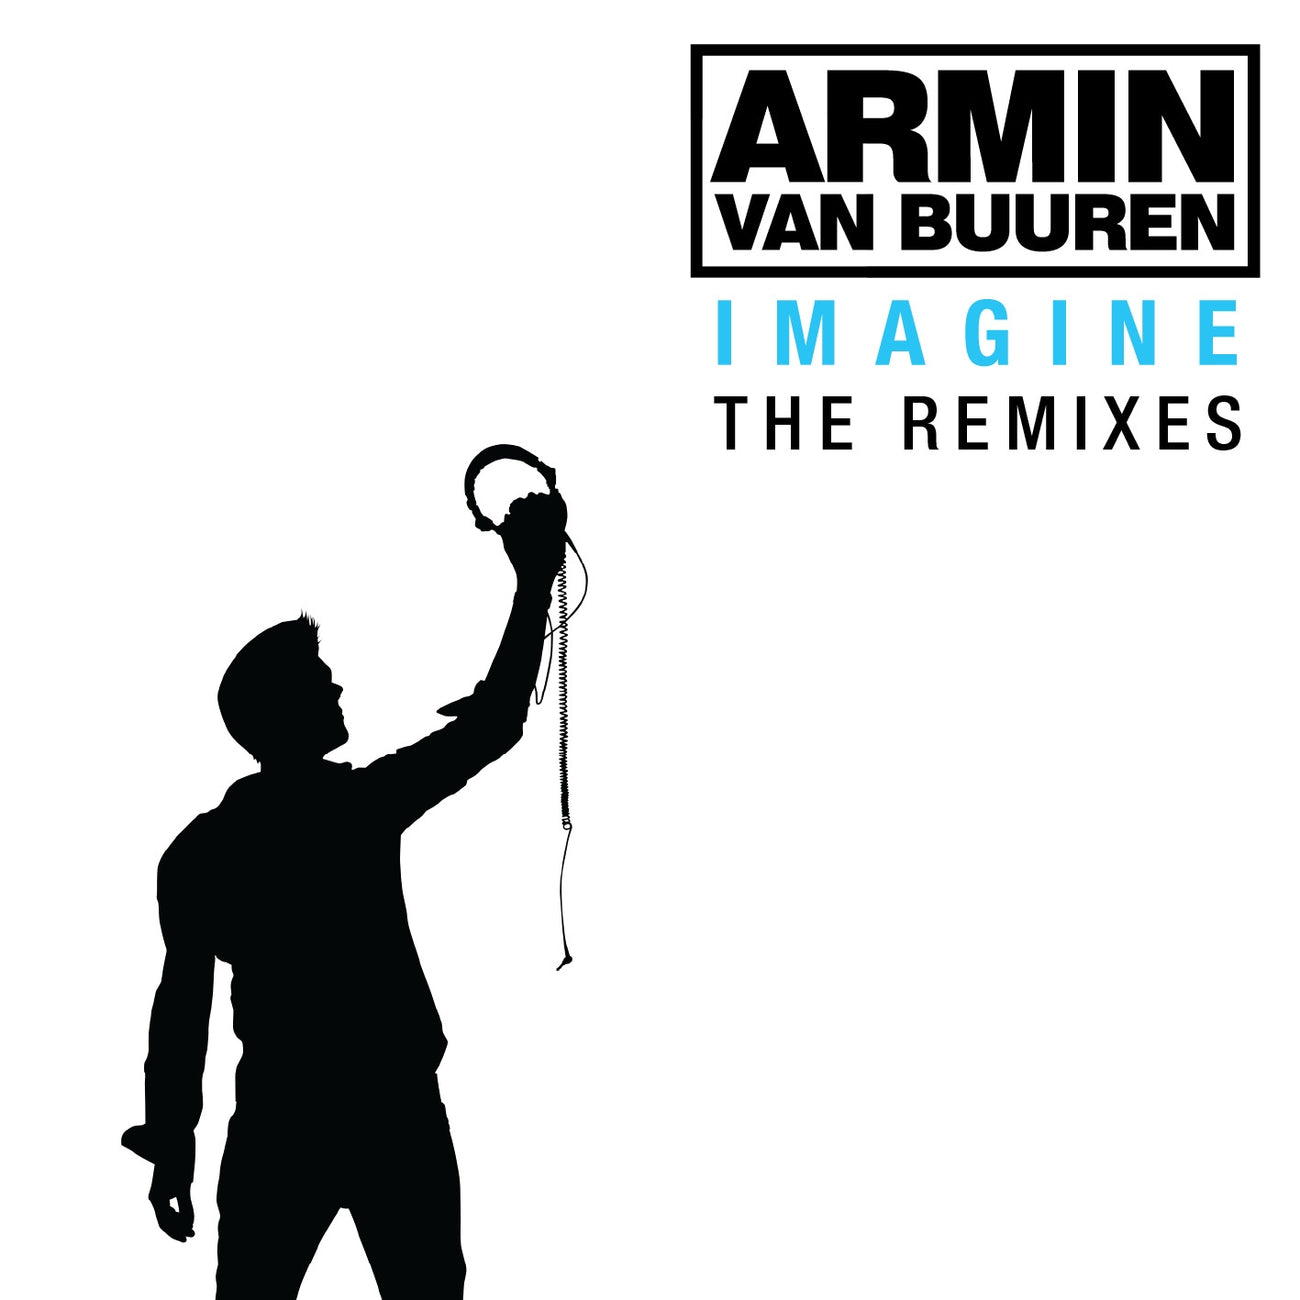 Armin van Buuren - Imagine (The Remixes)